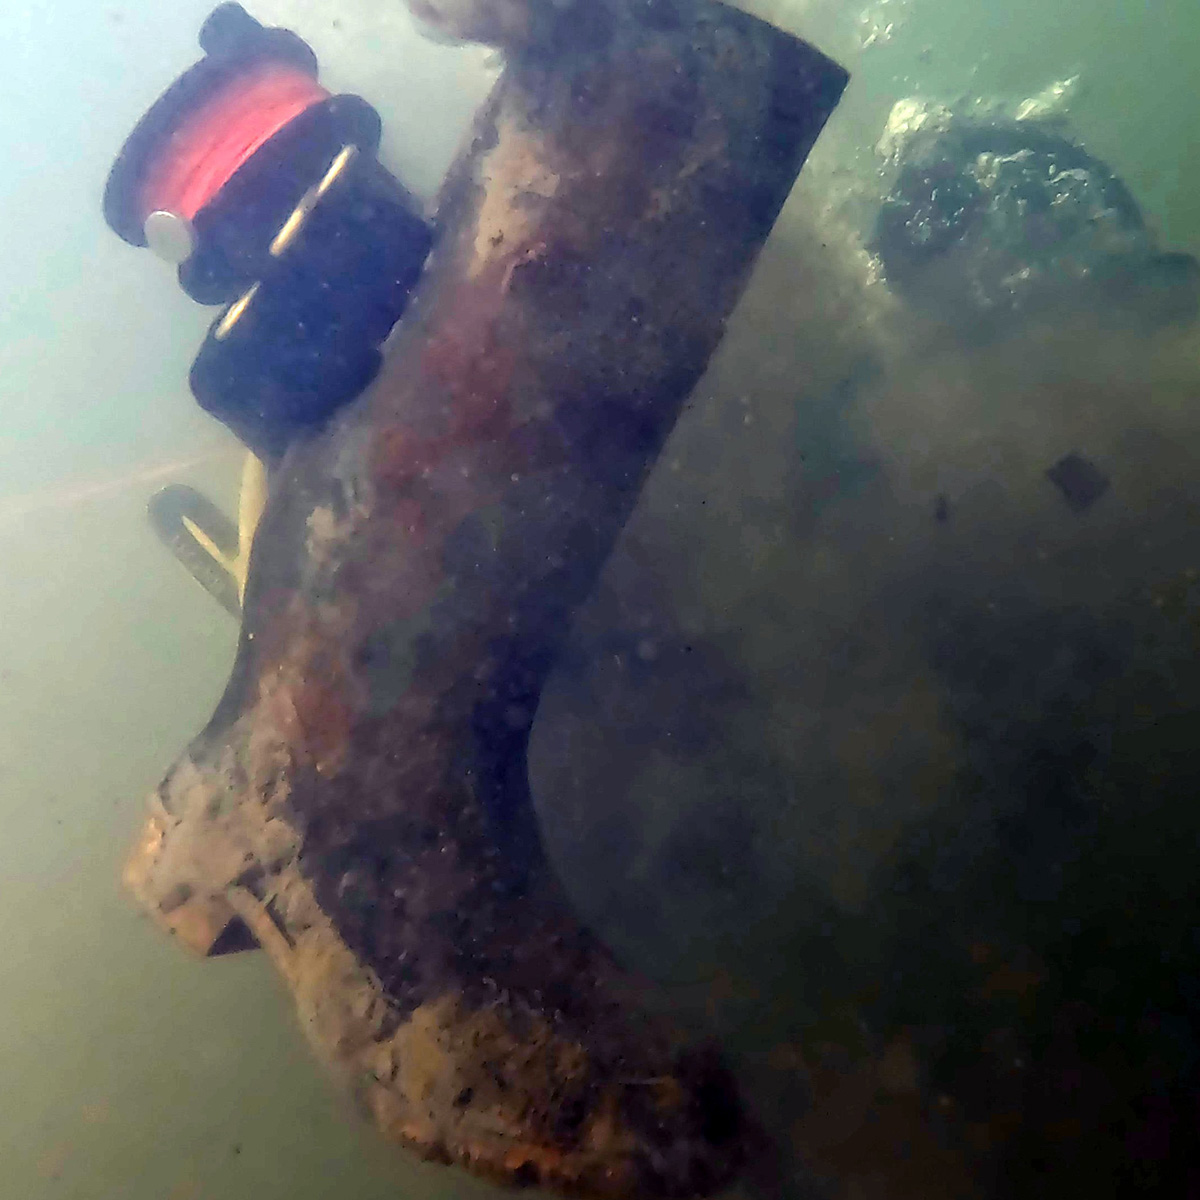 La botte d'un citoyen de Yellowknife, Ens 1 Hagen, trouvée au fond du Grand lac des Esclaves.